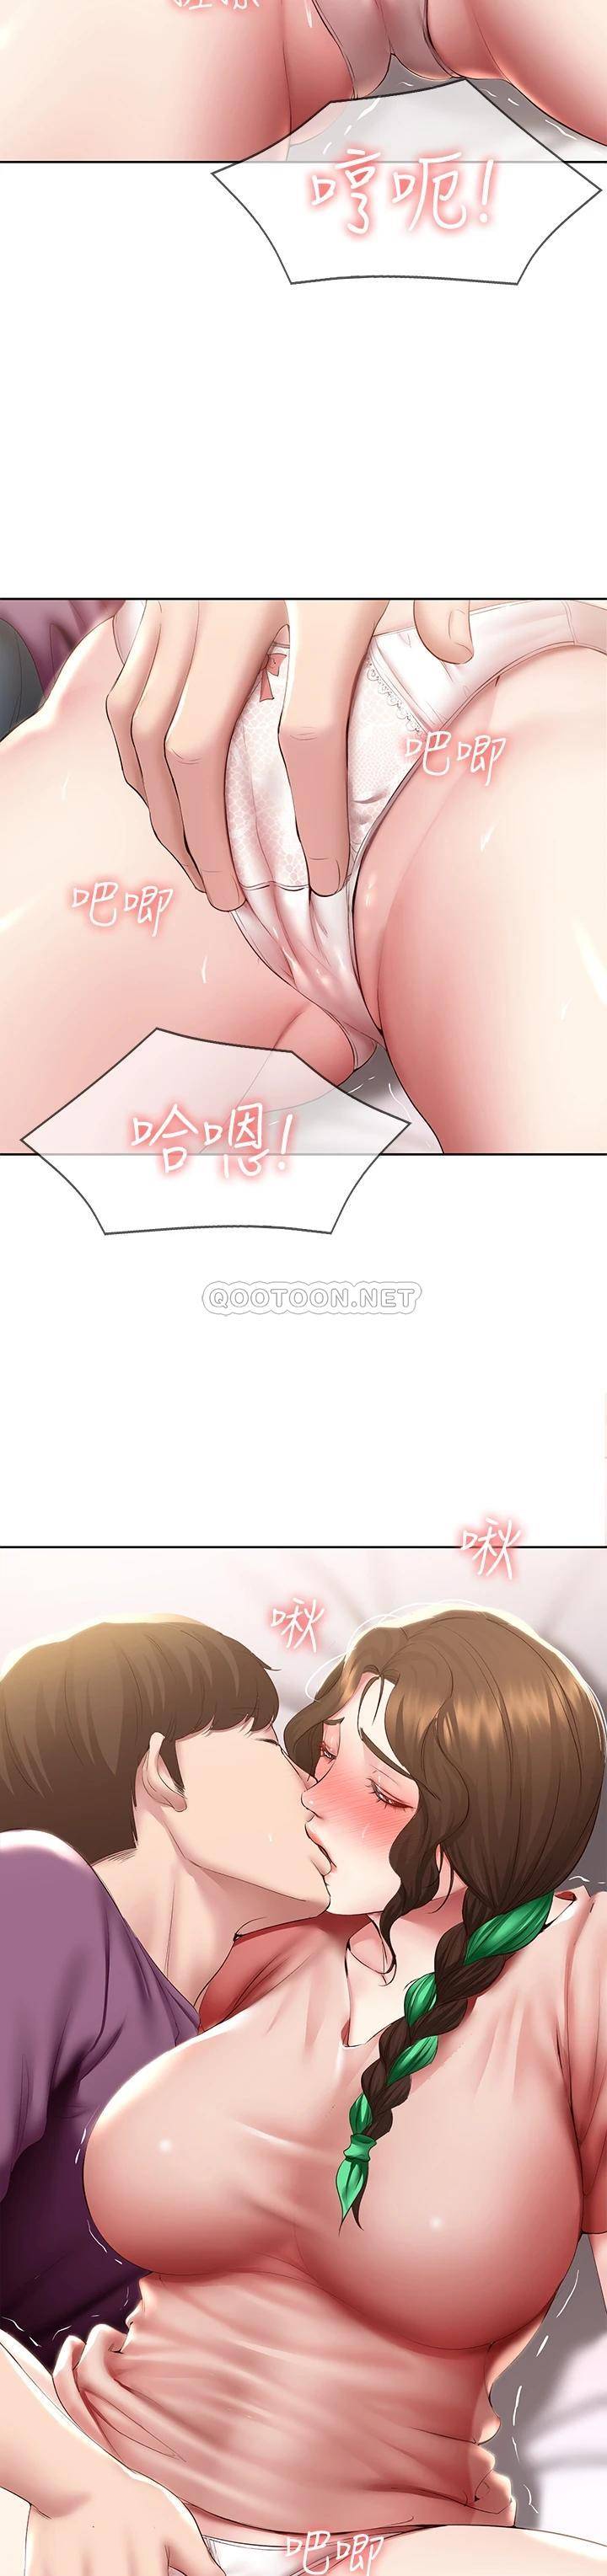 韩国污漫画 寄宿日記 第95话在内裤里逐渐湿润的小穴 20